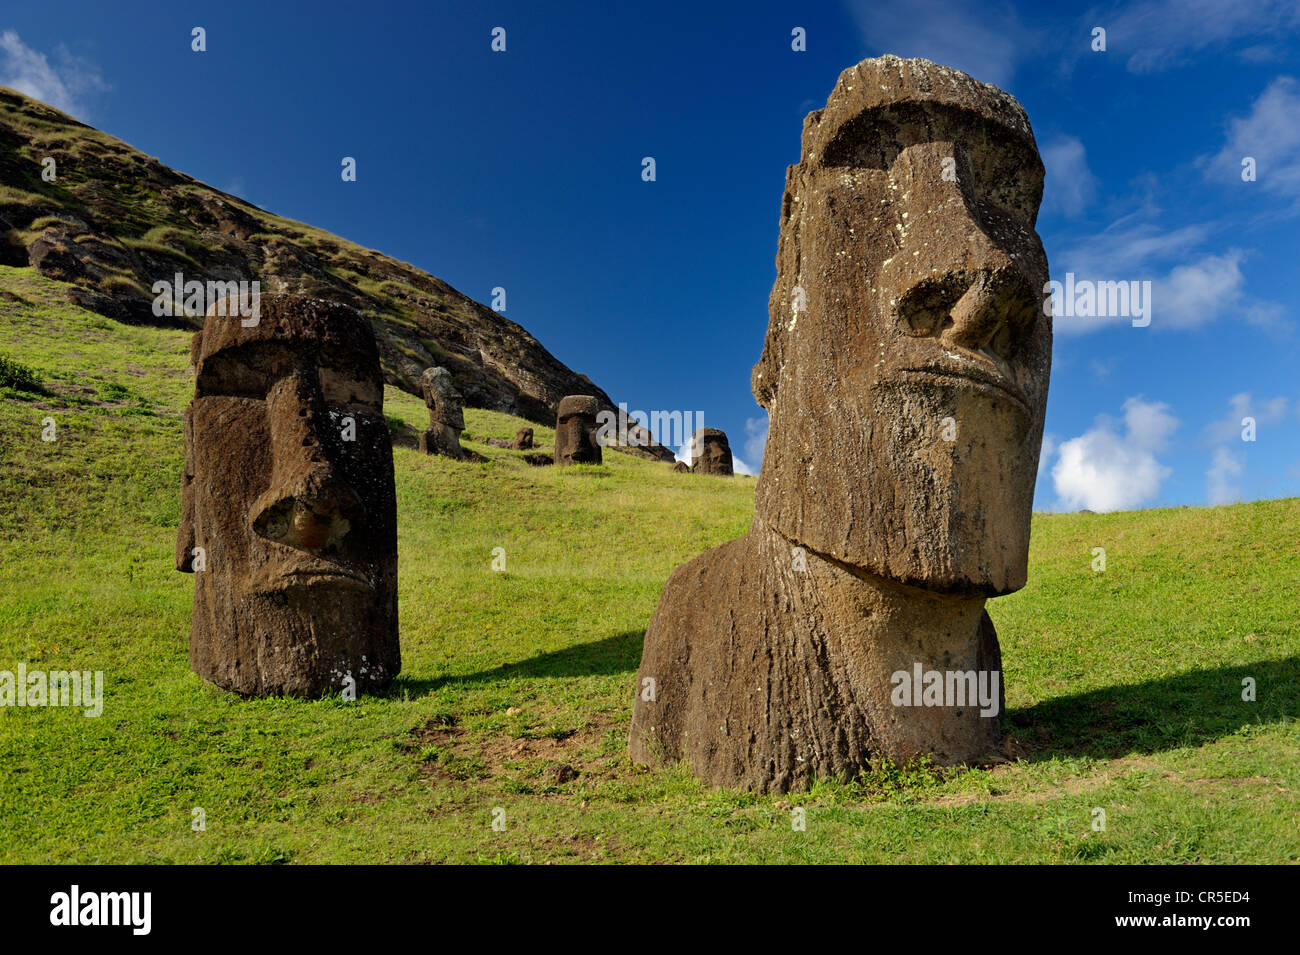 Pietra scolpita statue, incompiuto moai a Rano Raraku, il vulcano da dove i moai sono state scavate di roccia vulcanica. Isola di Pasqua. Sud Pacifico Foto Stock